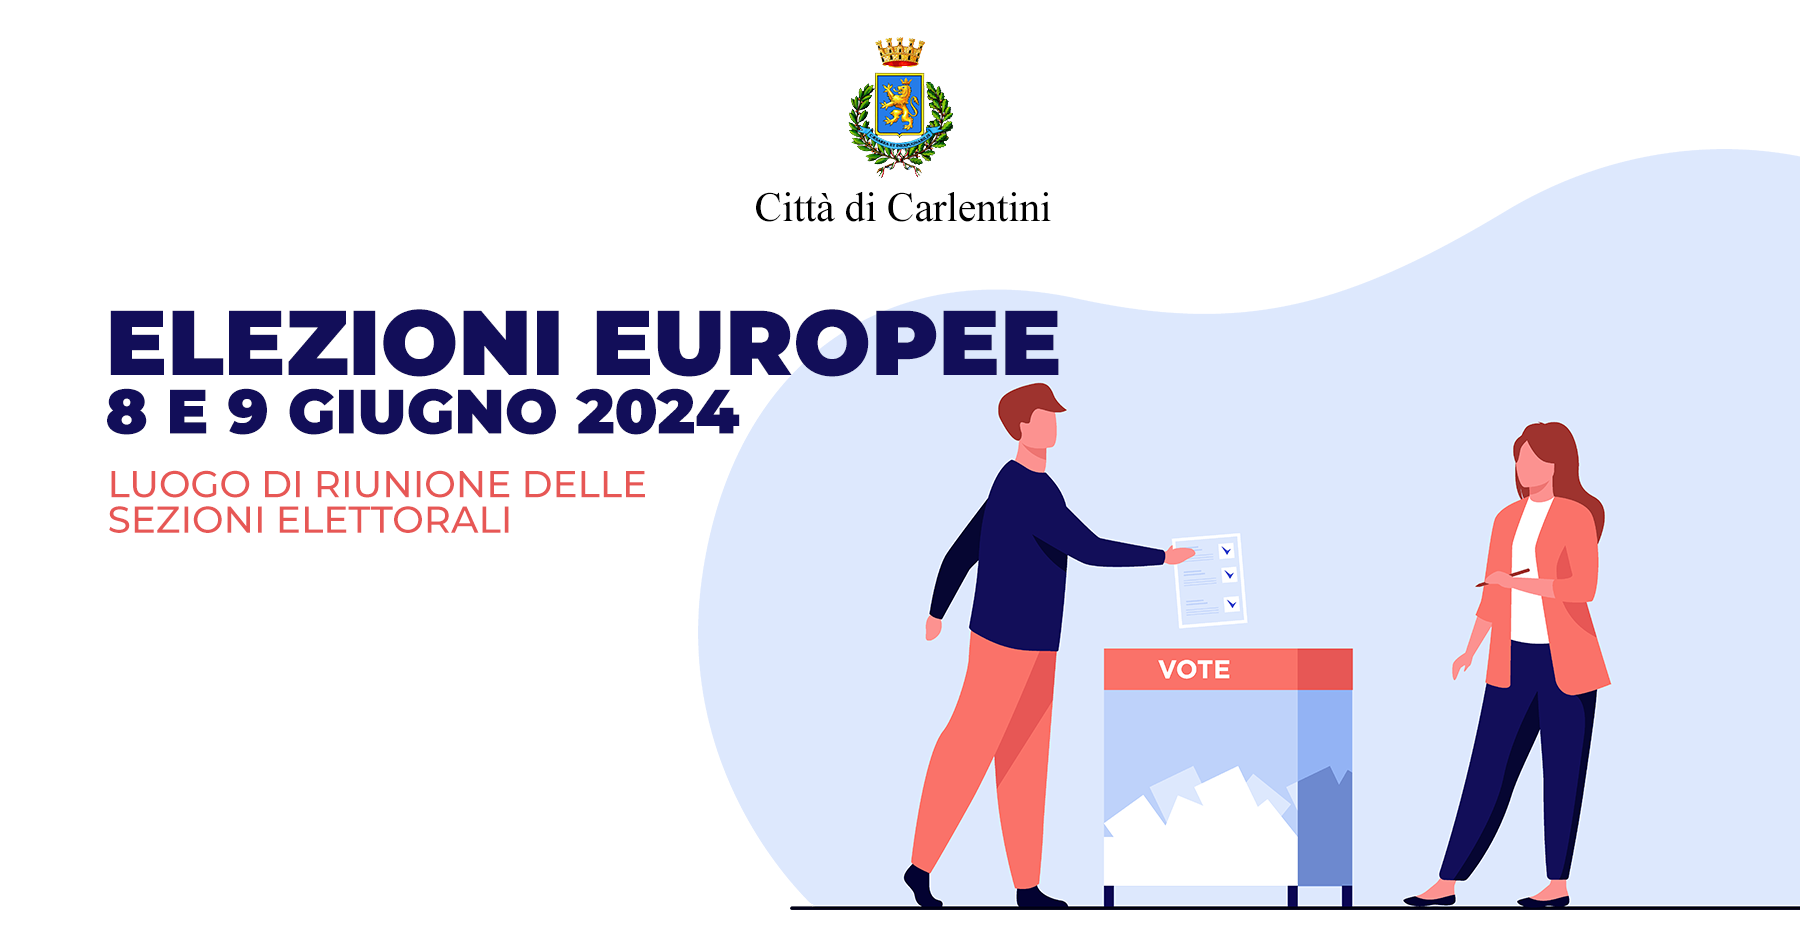 Elezioni europee 2024: luogo di riunione delle sezioni elettorali